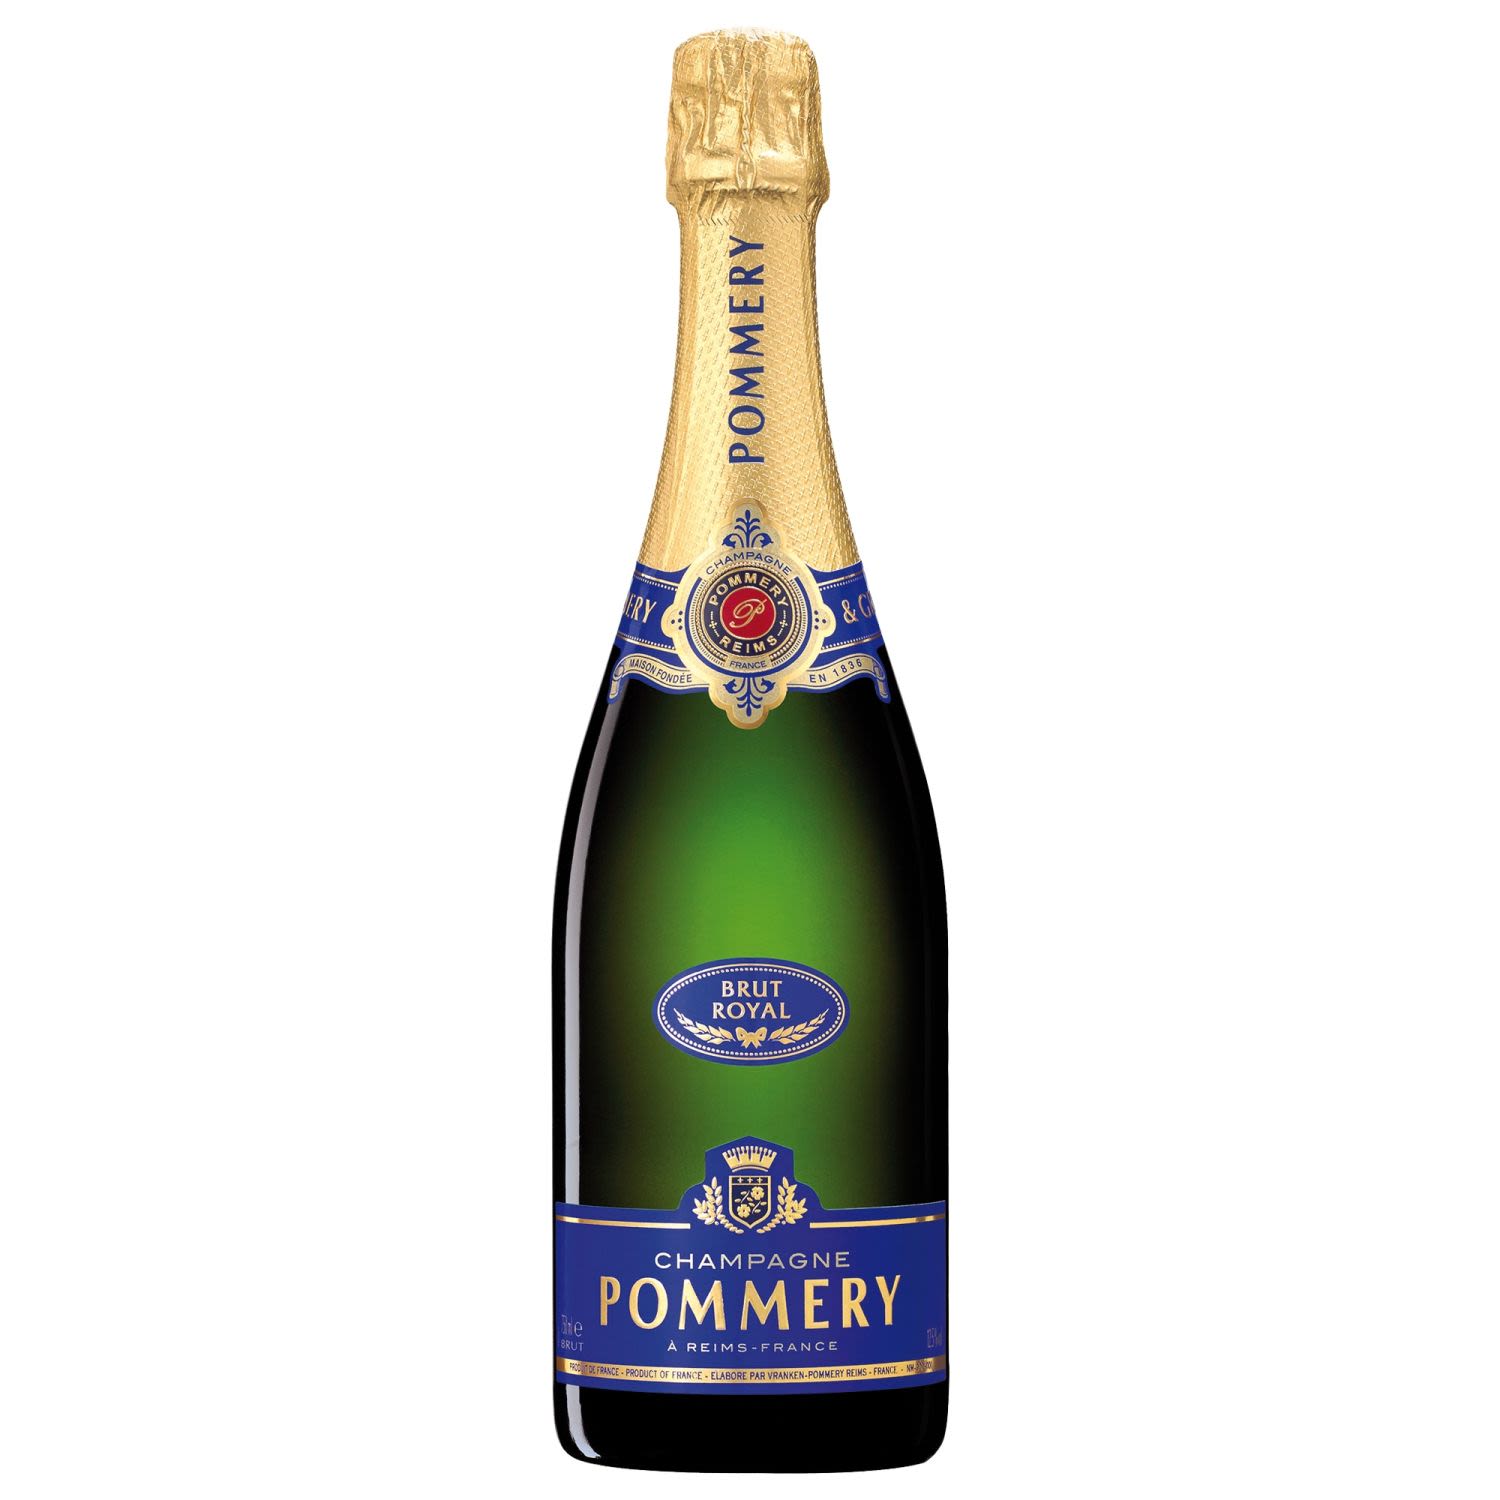 Pommery Brut Royal Champagne 750mL Bottle